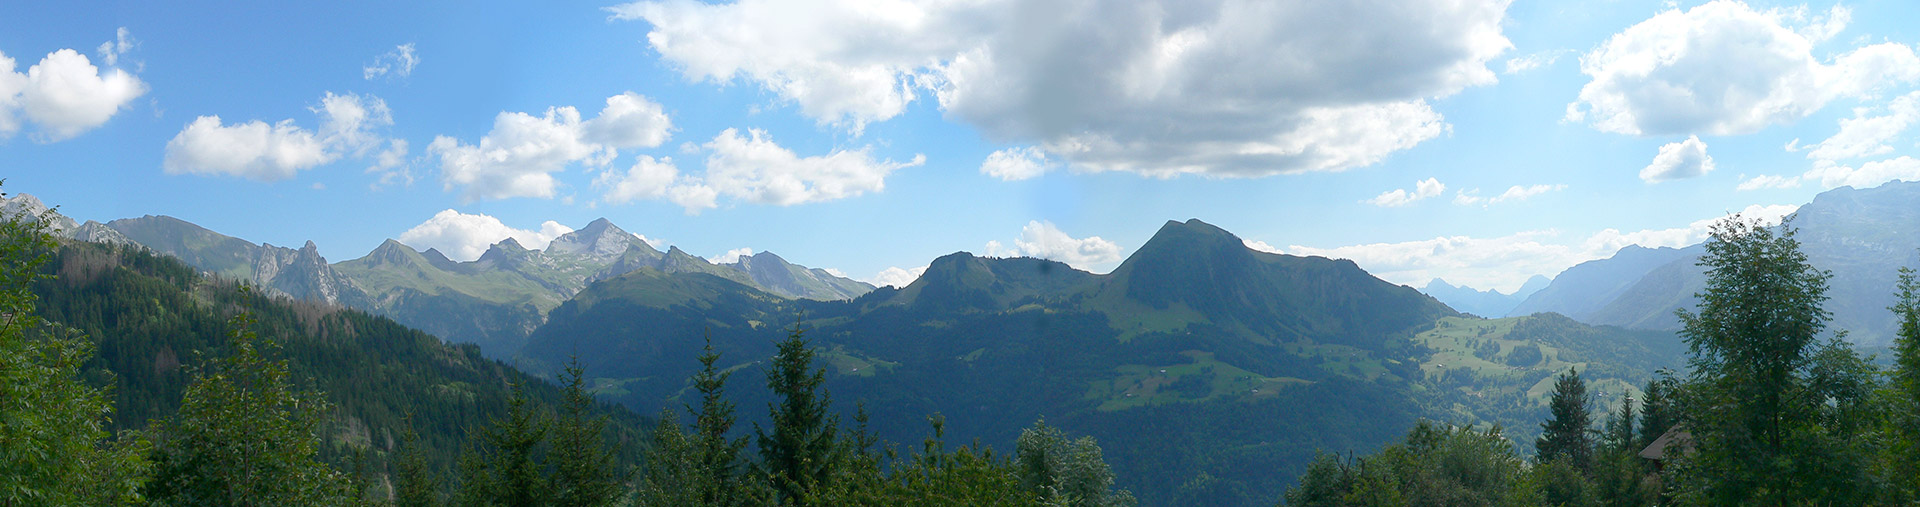 Balade en Haute-Savoie - Quatrième image